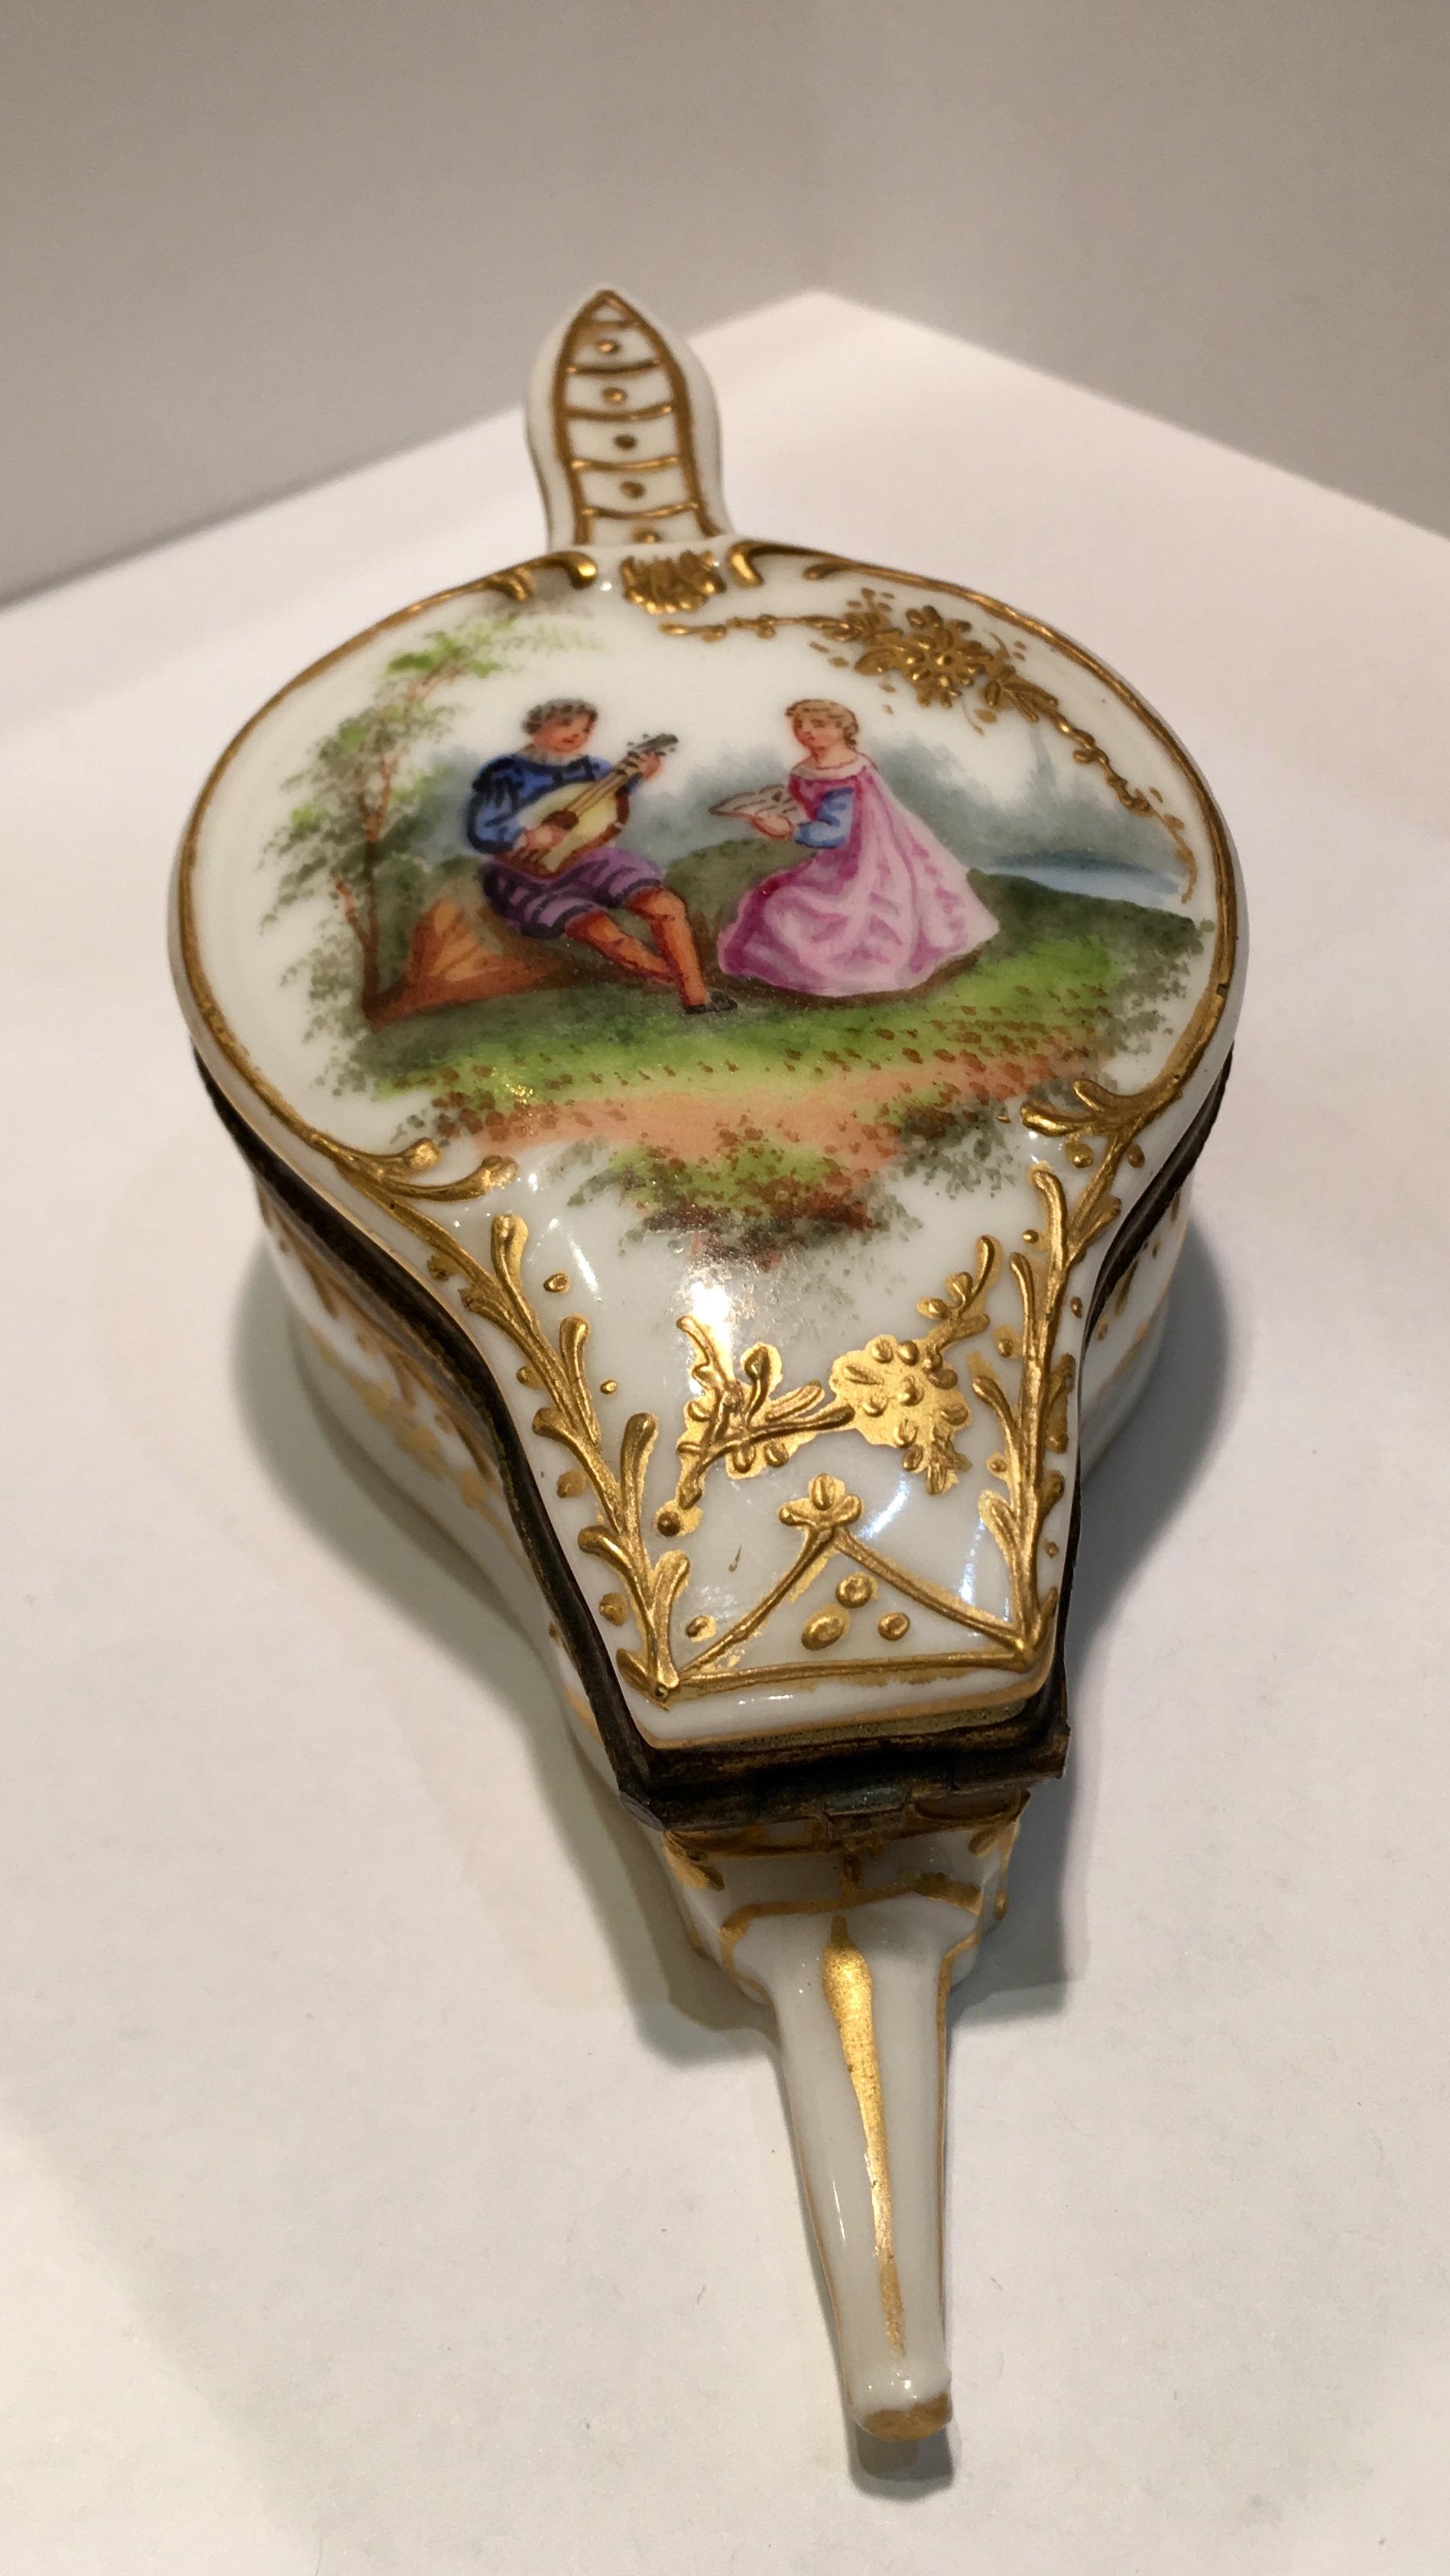 Exquise boîte française ancienne, datant des années 1890, est une boîte miniature en porcelaine faite et peinte à la main avec un couvercle à charnière et a la forme d'un soufflet de feu. L'intérieur de la boîte est peint à la main en or riche de 24